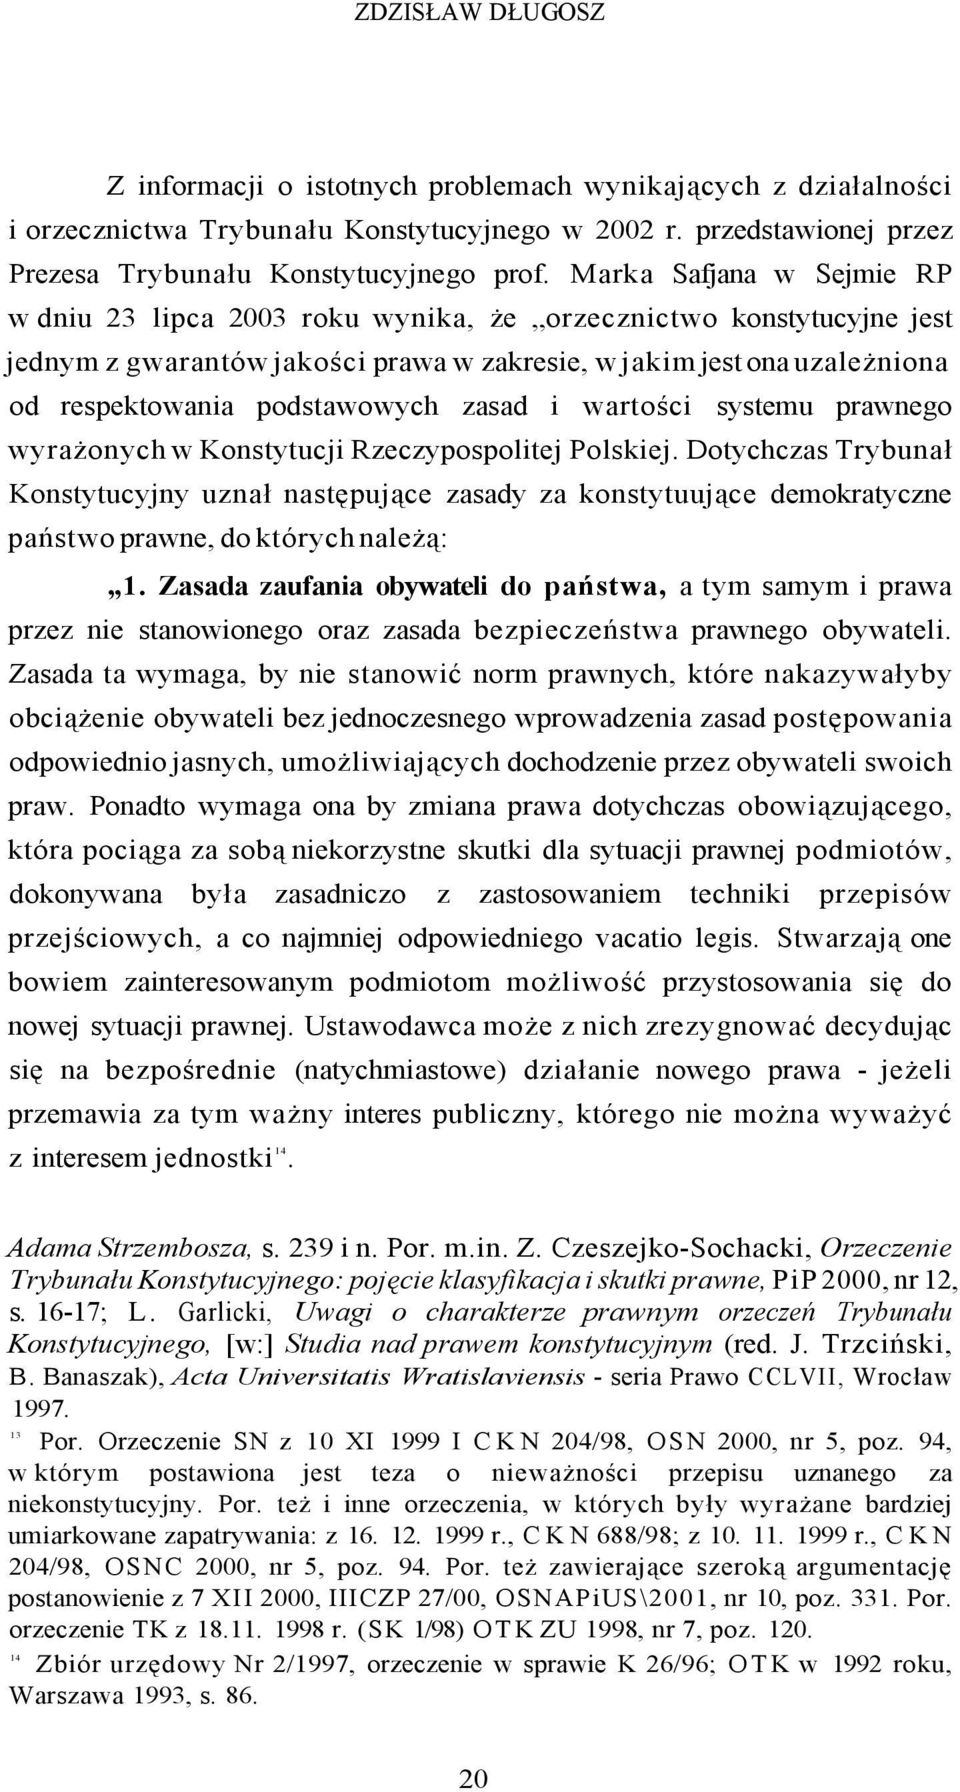 zasad i wartości systemu prawnego wyrażonych w Konstytucji Rzeczypospolitej Polskiej.